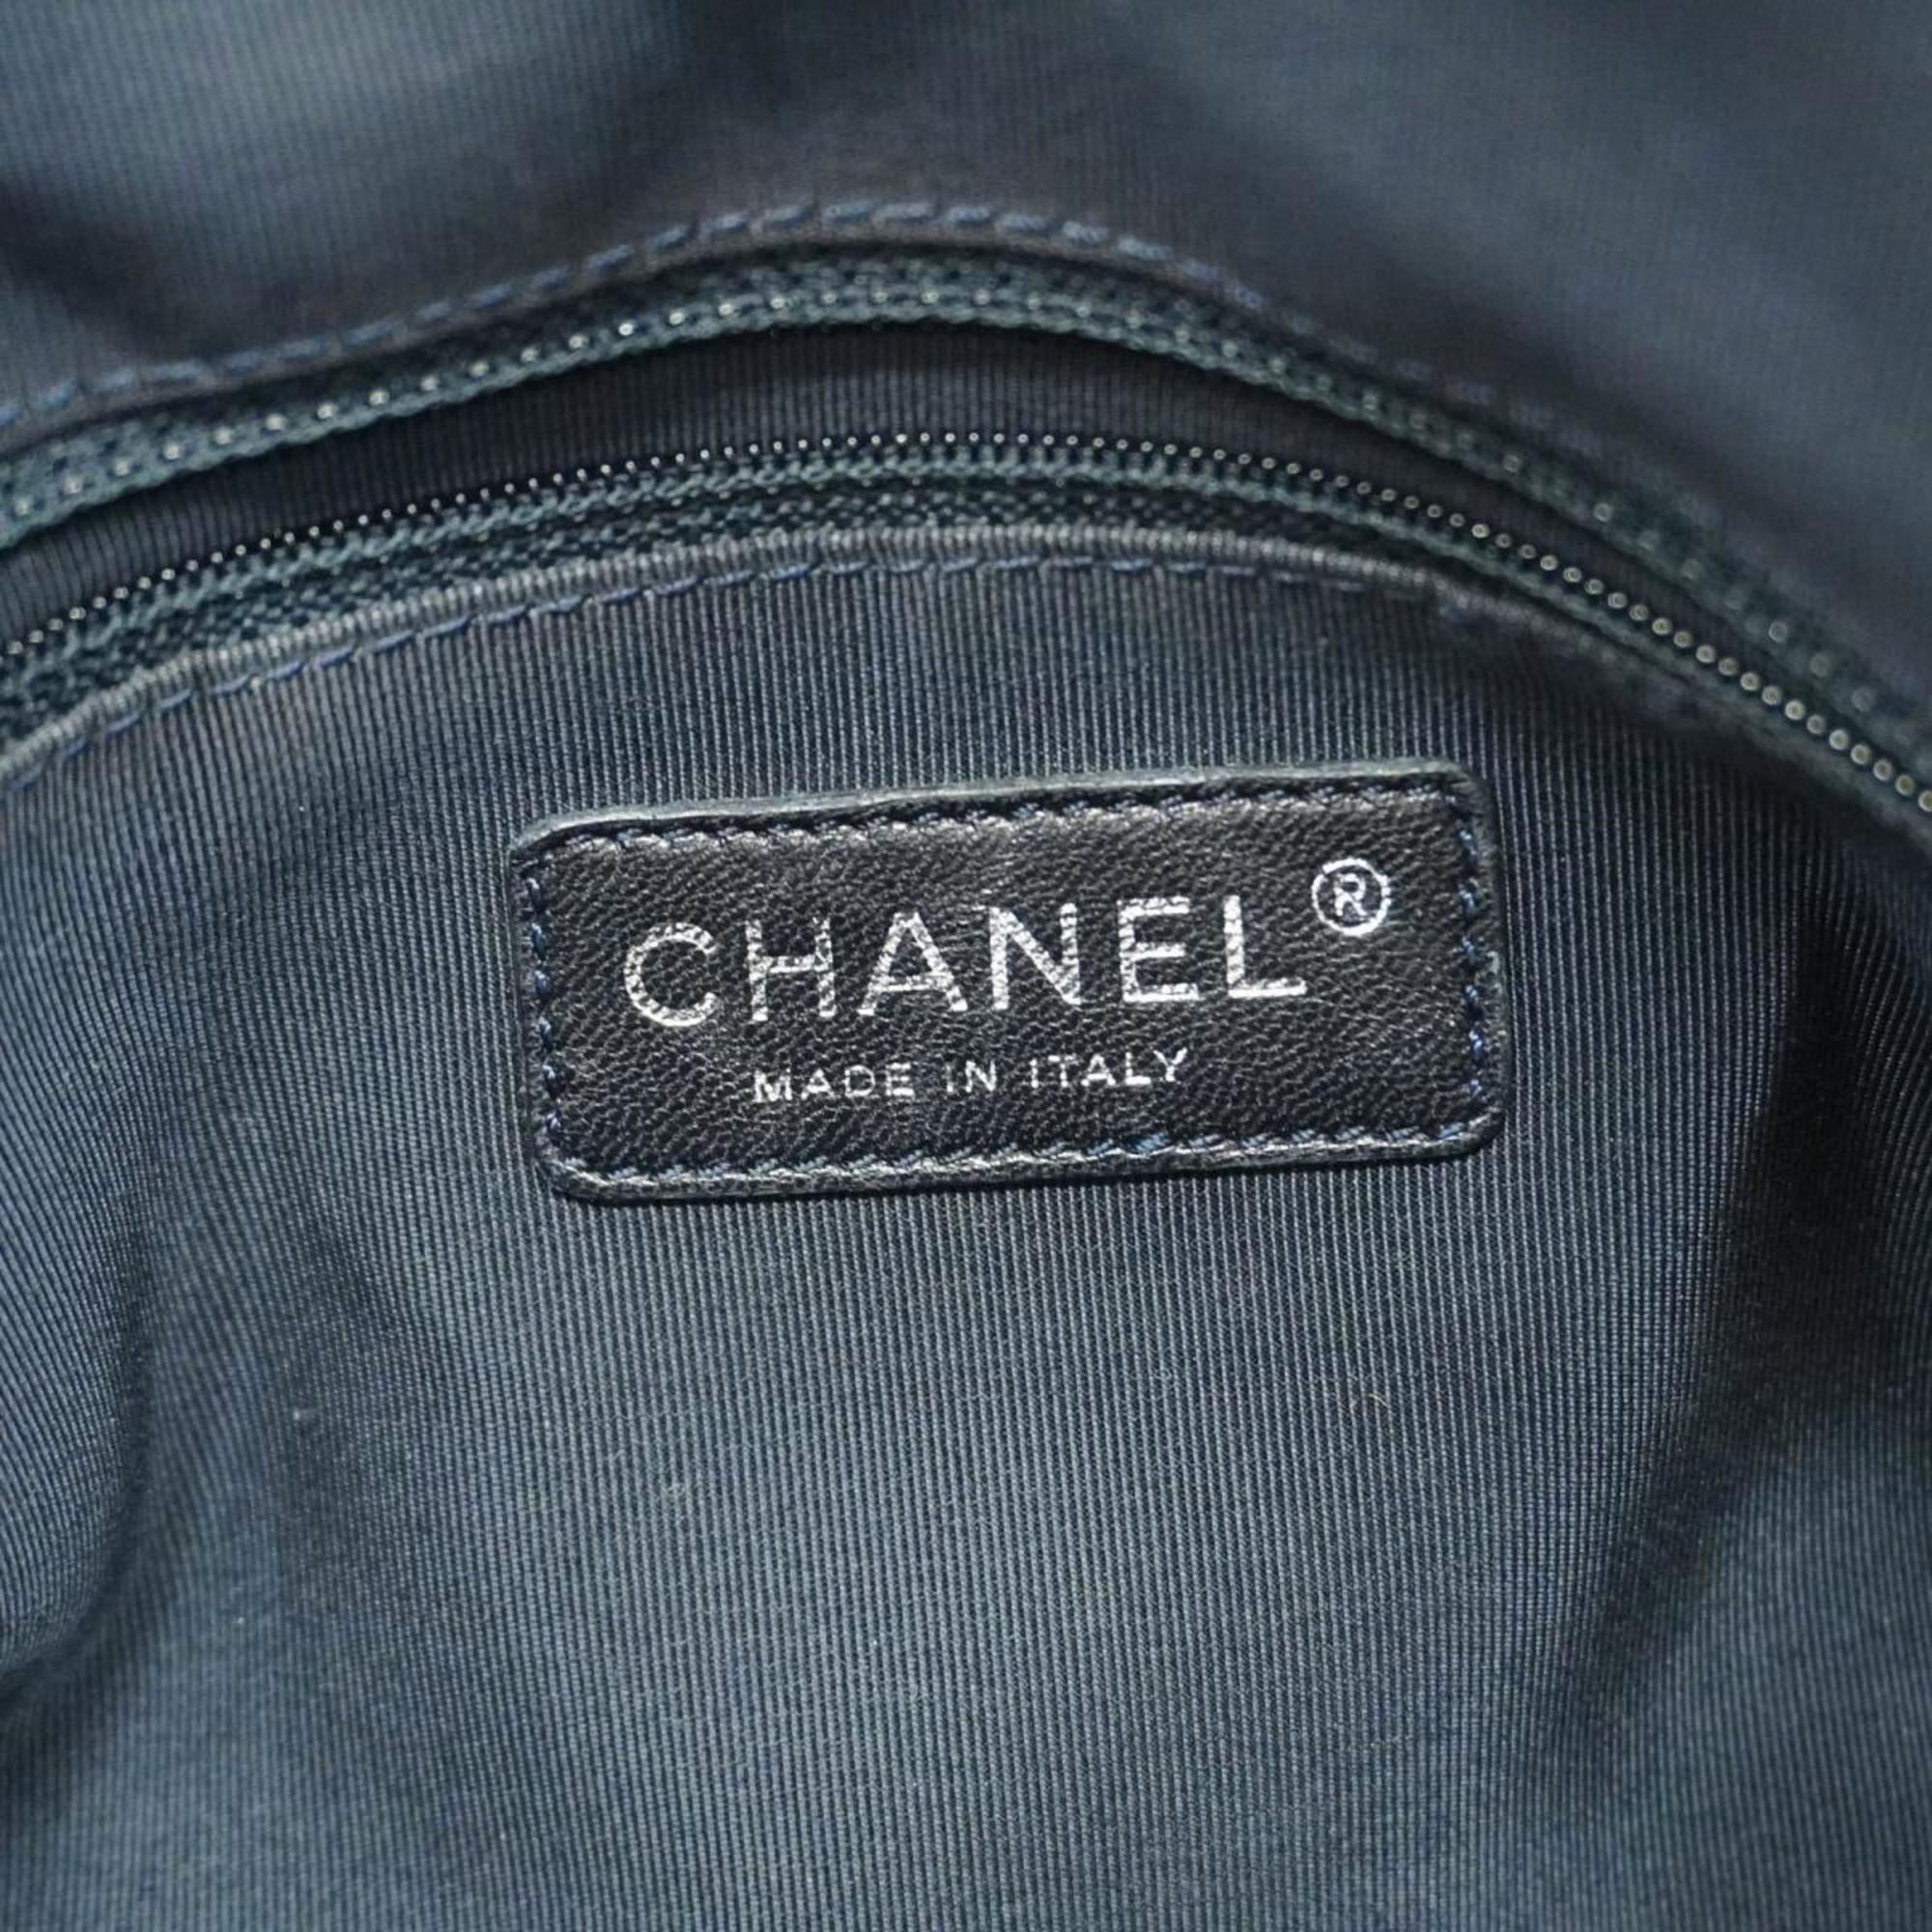 シャネル(Chanel) シャネル ショルダーバッグ マトラッセ チェーンショルダー ナイロン ブルー   レディース